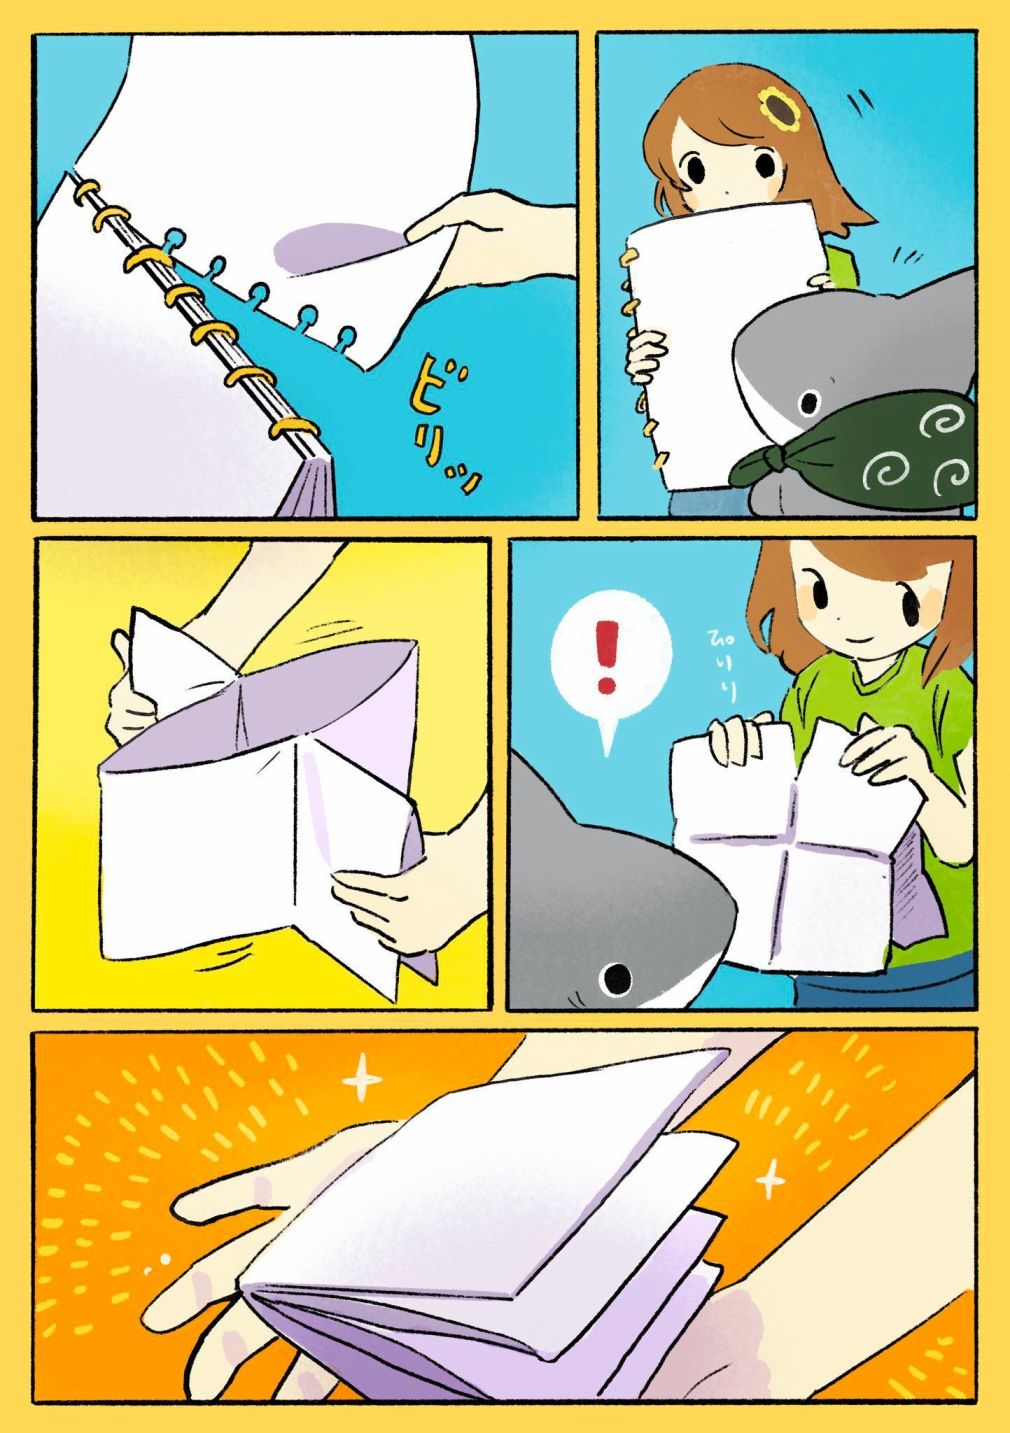 小鲨鱼去郊游 - 画 - 1